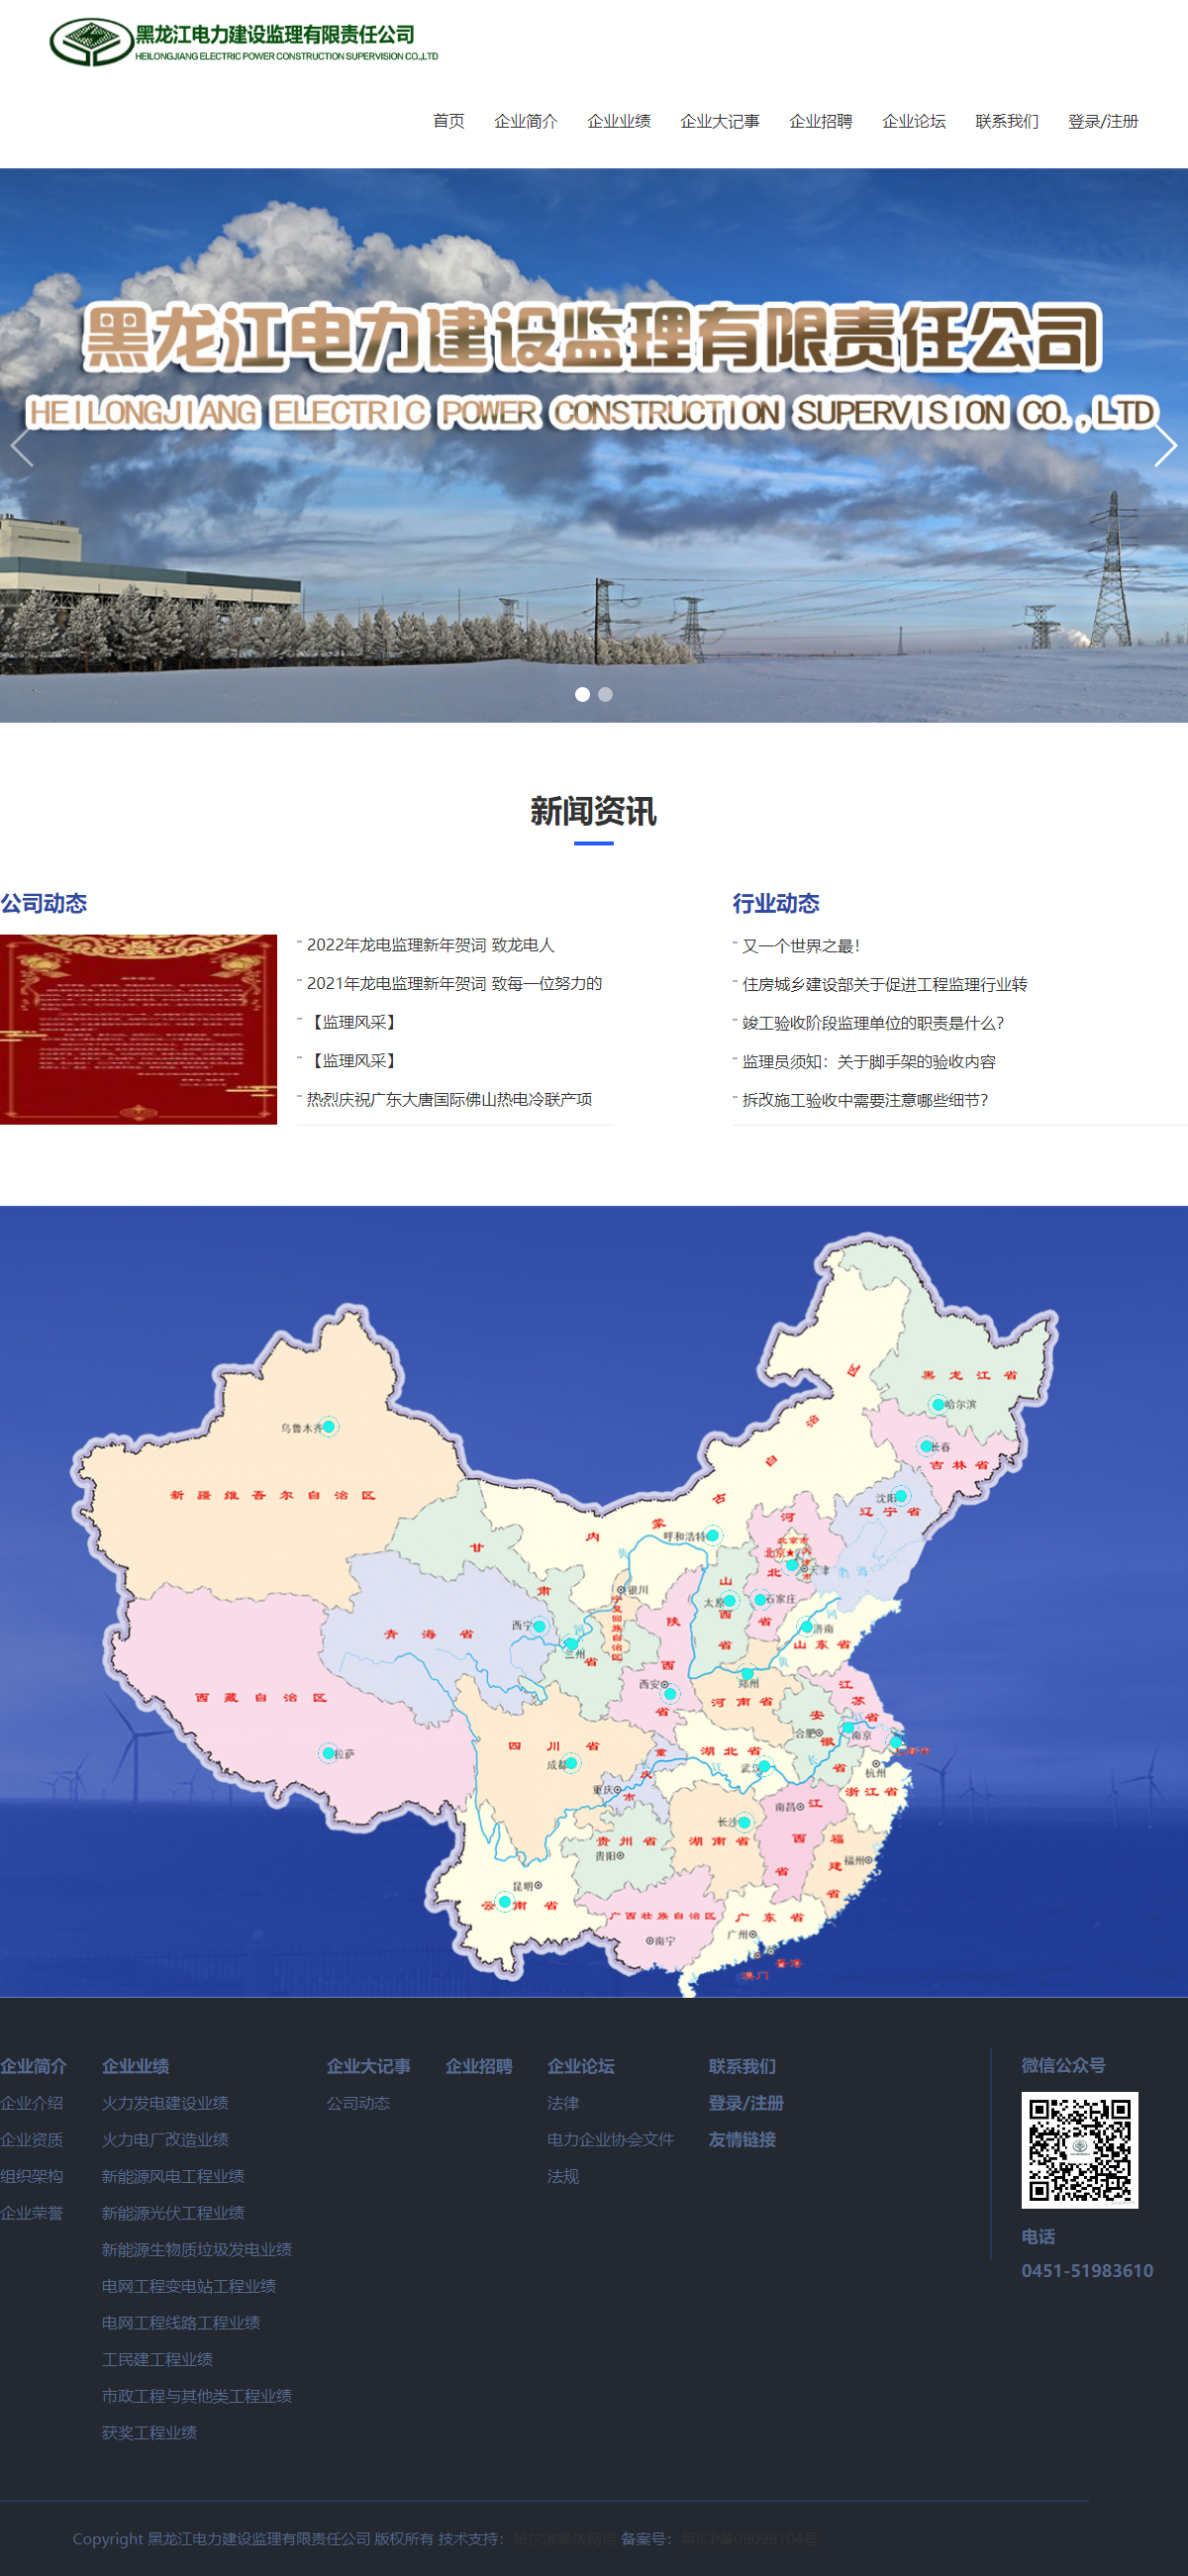 黑龙江电力建设监理有限责任公司网站案例